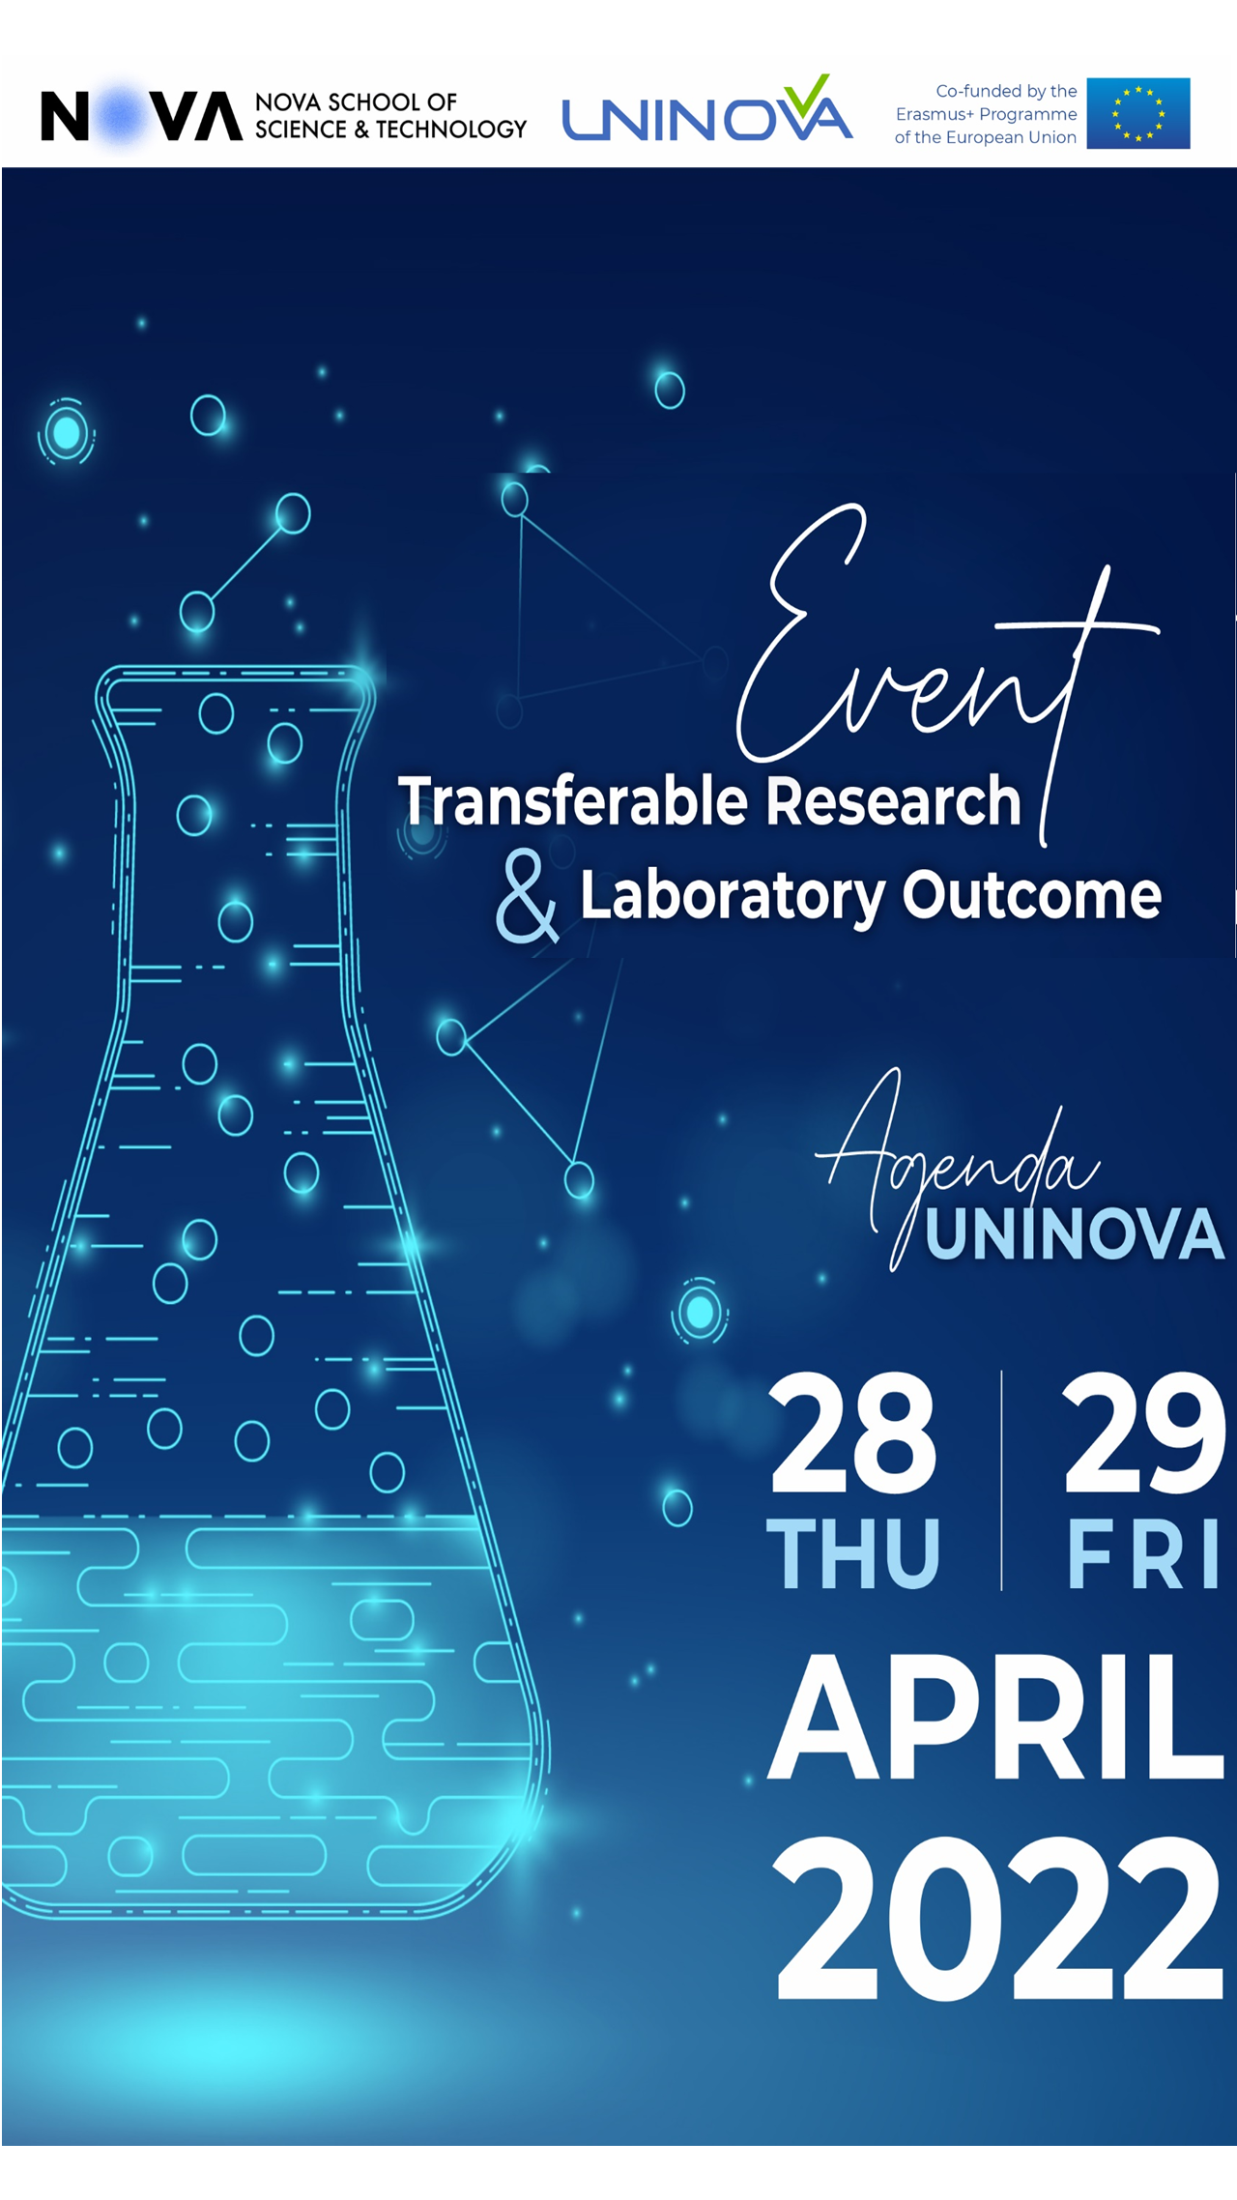 PRODUTECH DIH participa no Transferable Research and Laboratory Outcomes Event